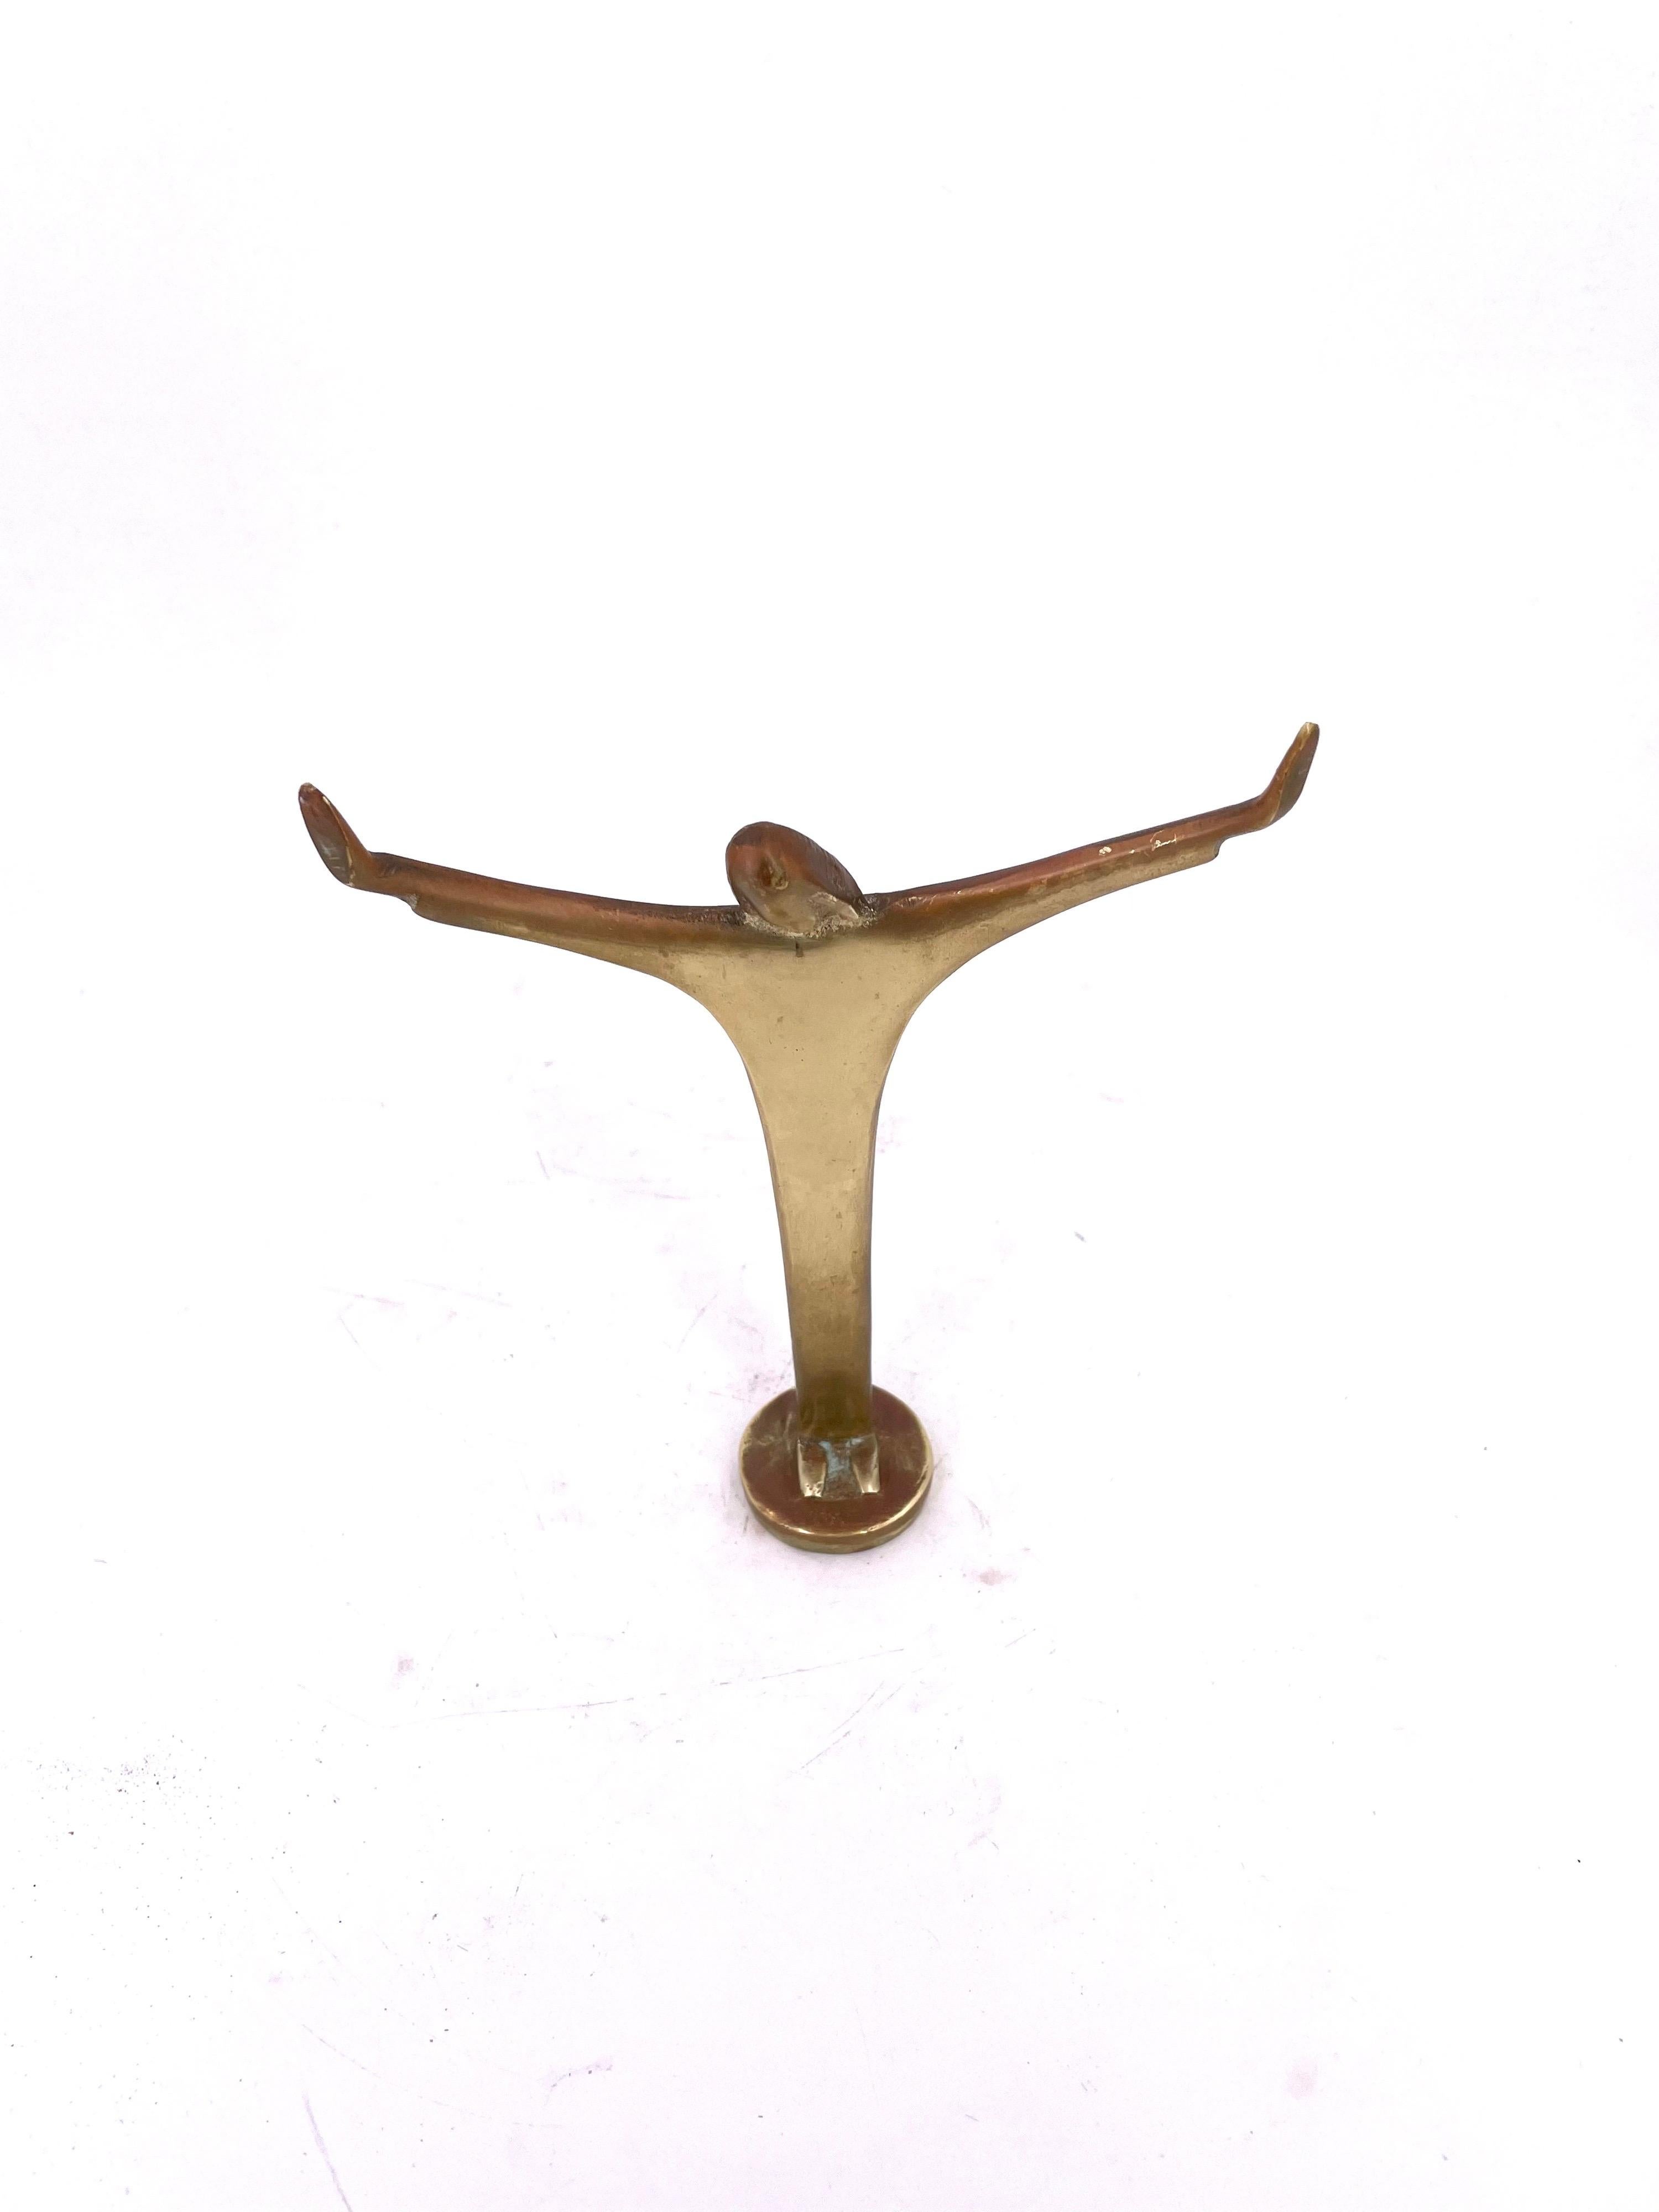 Hong Kong Modernist Solid Brass Open Arms Christ Sculpture
lol p11qq